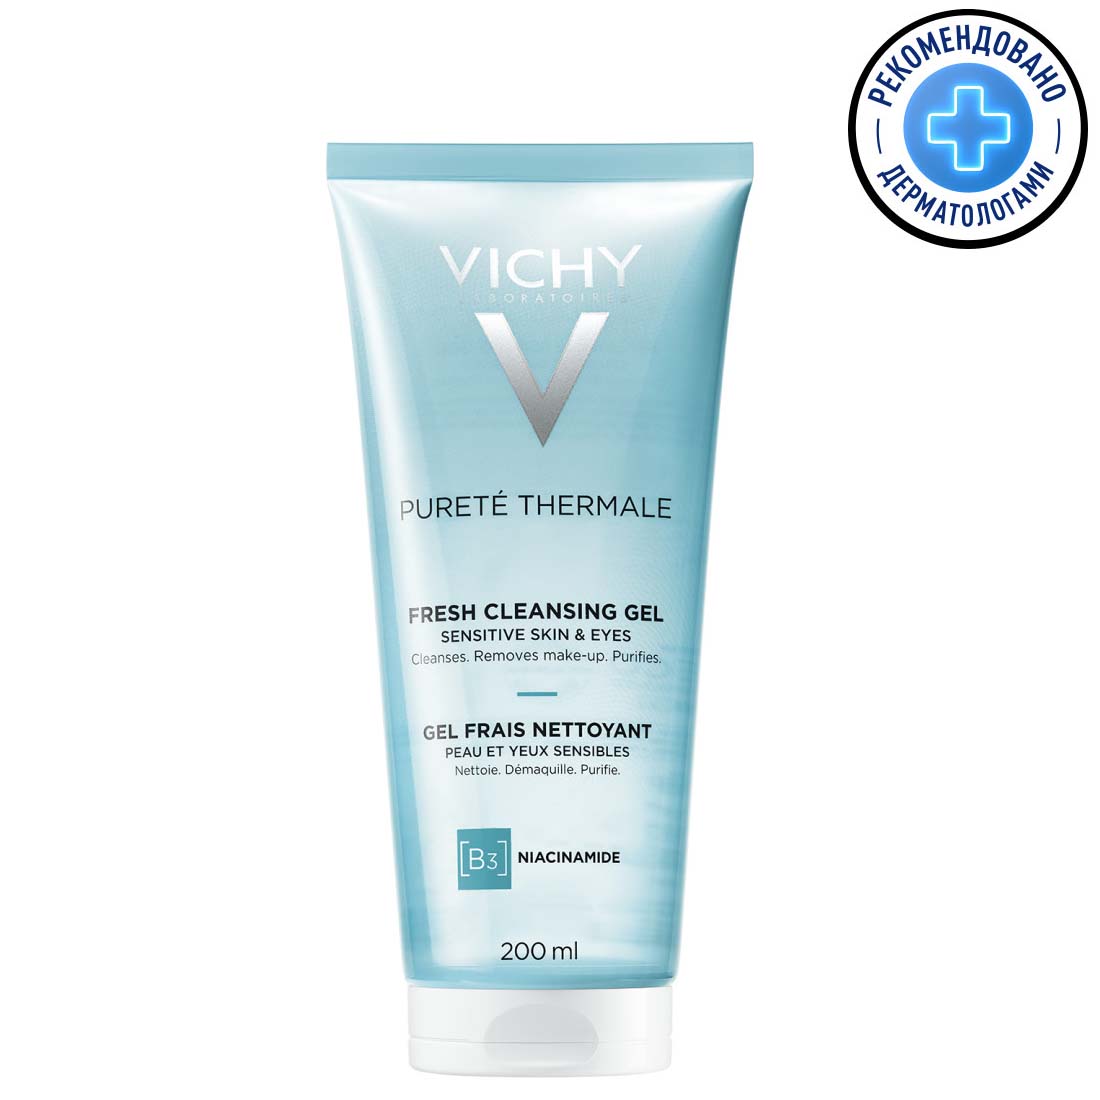 Vichy Очищающий освежающий гель для чувствительной кожи лица и вокруг глаз, 200 мл (Vichy, Purete Thermal) цена и фото